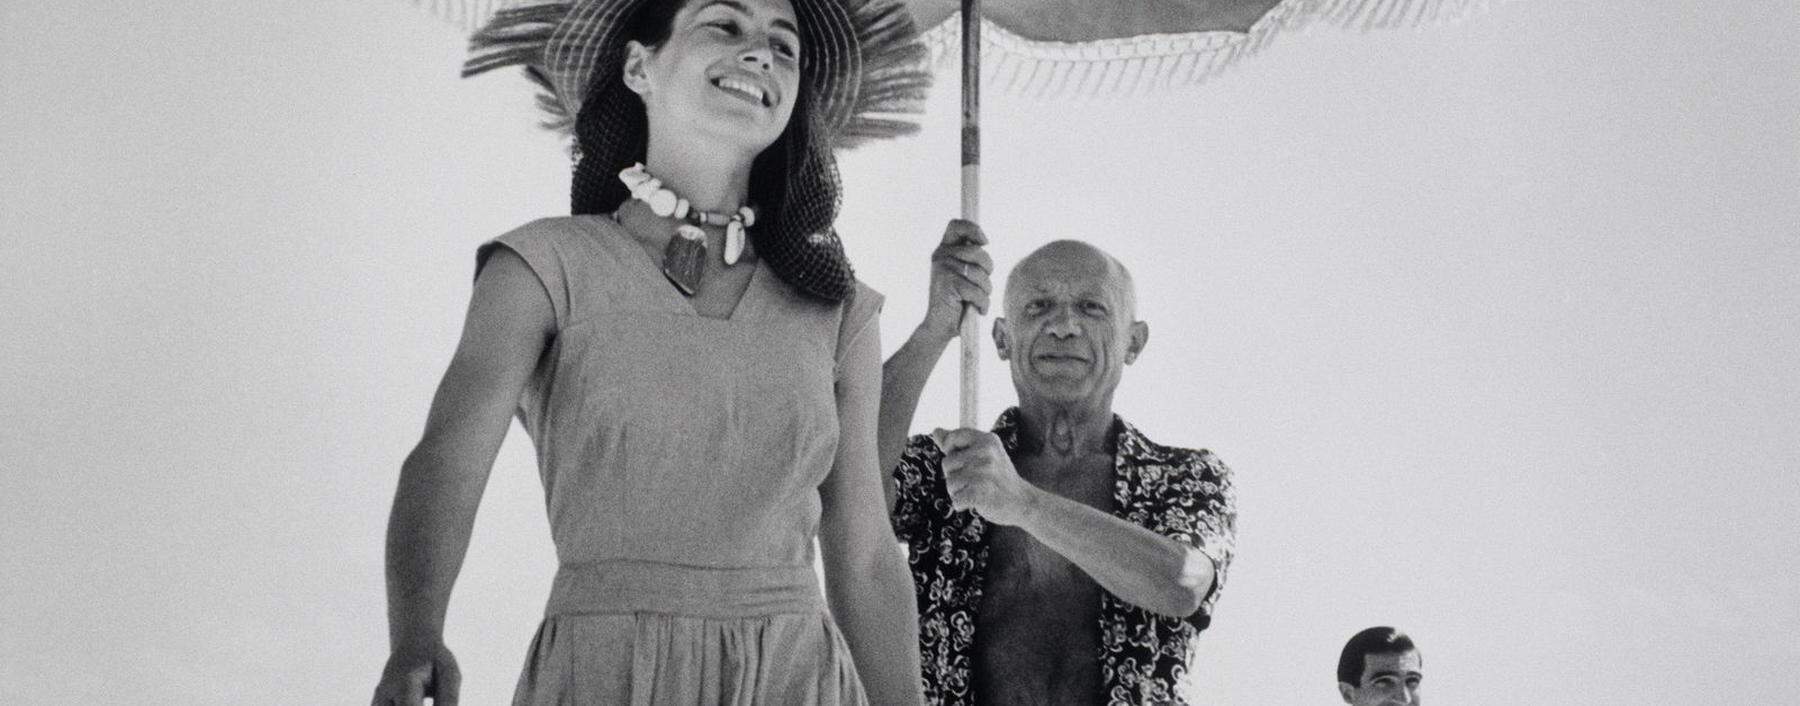 Geliebter Schirmträger. Pablo Picasso und seine Muse Françoise Gilot in Juan-les-Pins (1946).